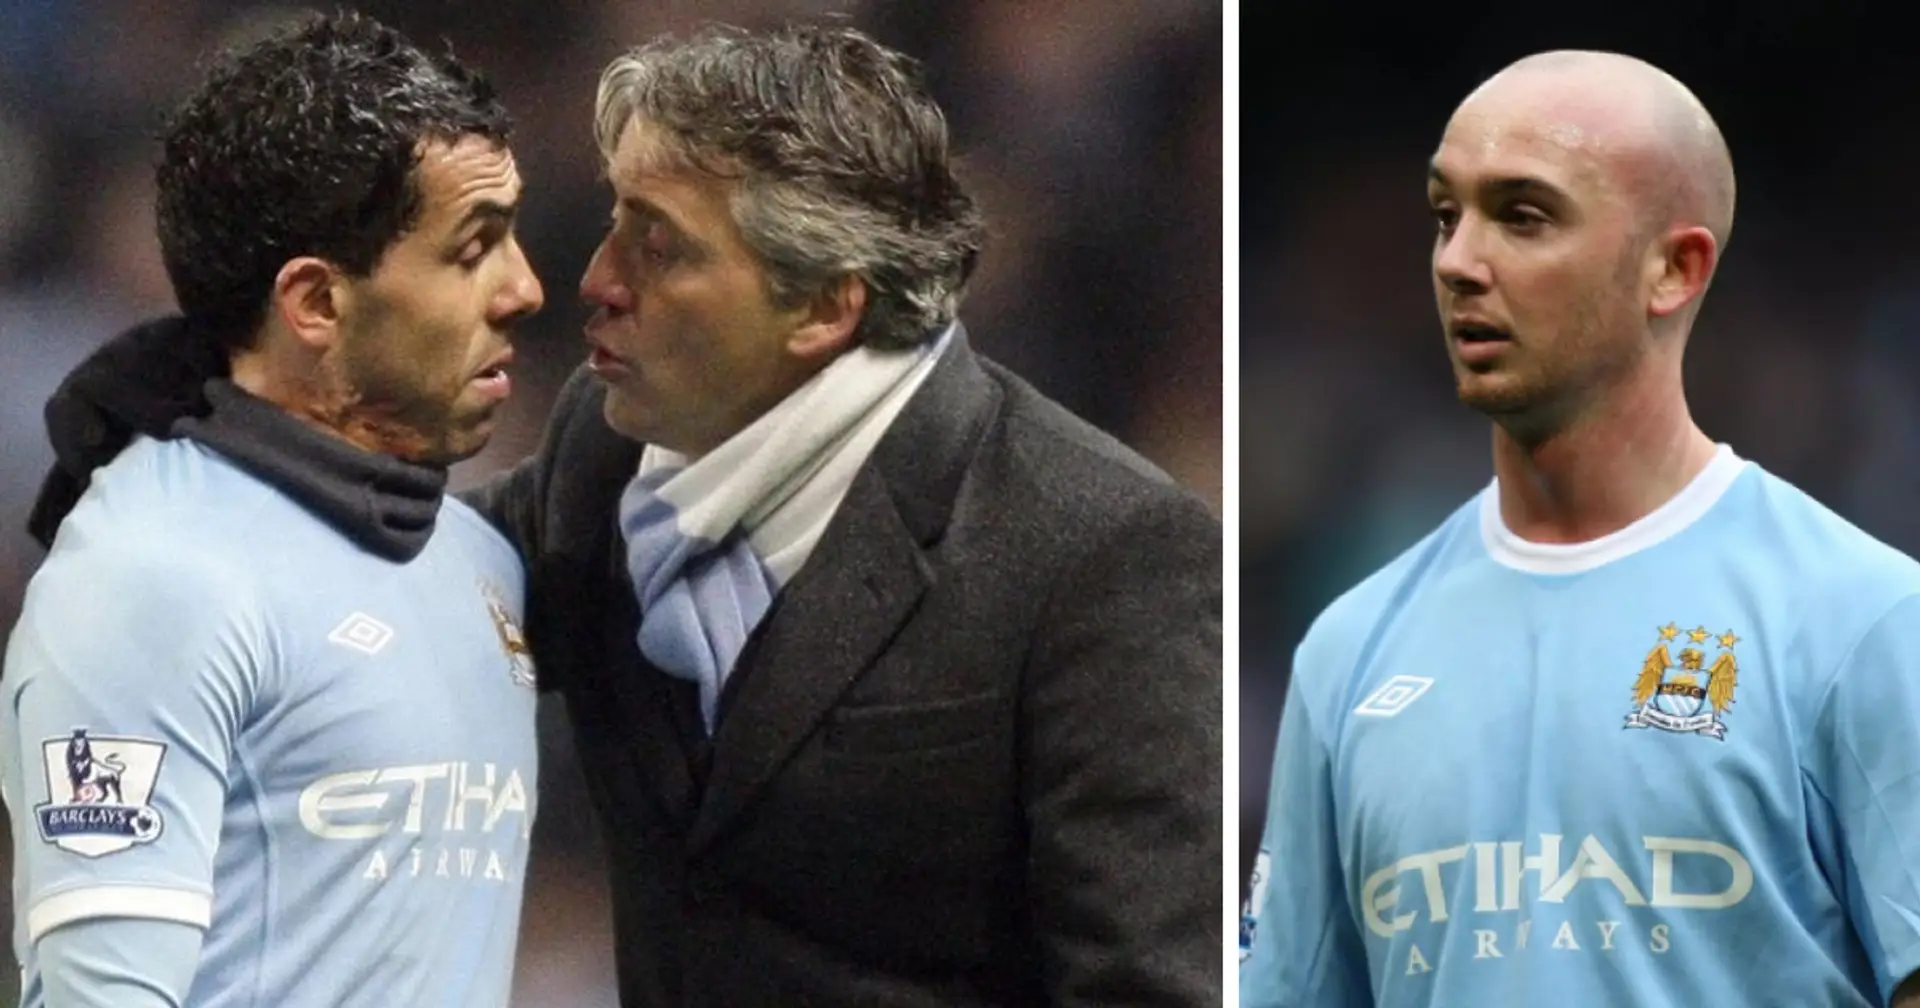 "Tevez l'a perdu contre lui": l'ancien milieu de terrain de Manchester City a révélé que Carlos Tevez avait failli se battre avec Mancini